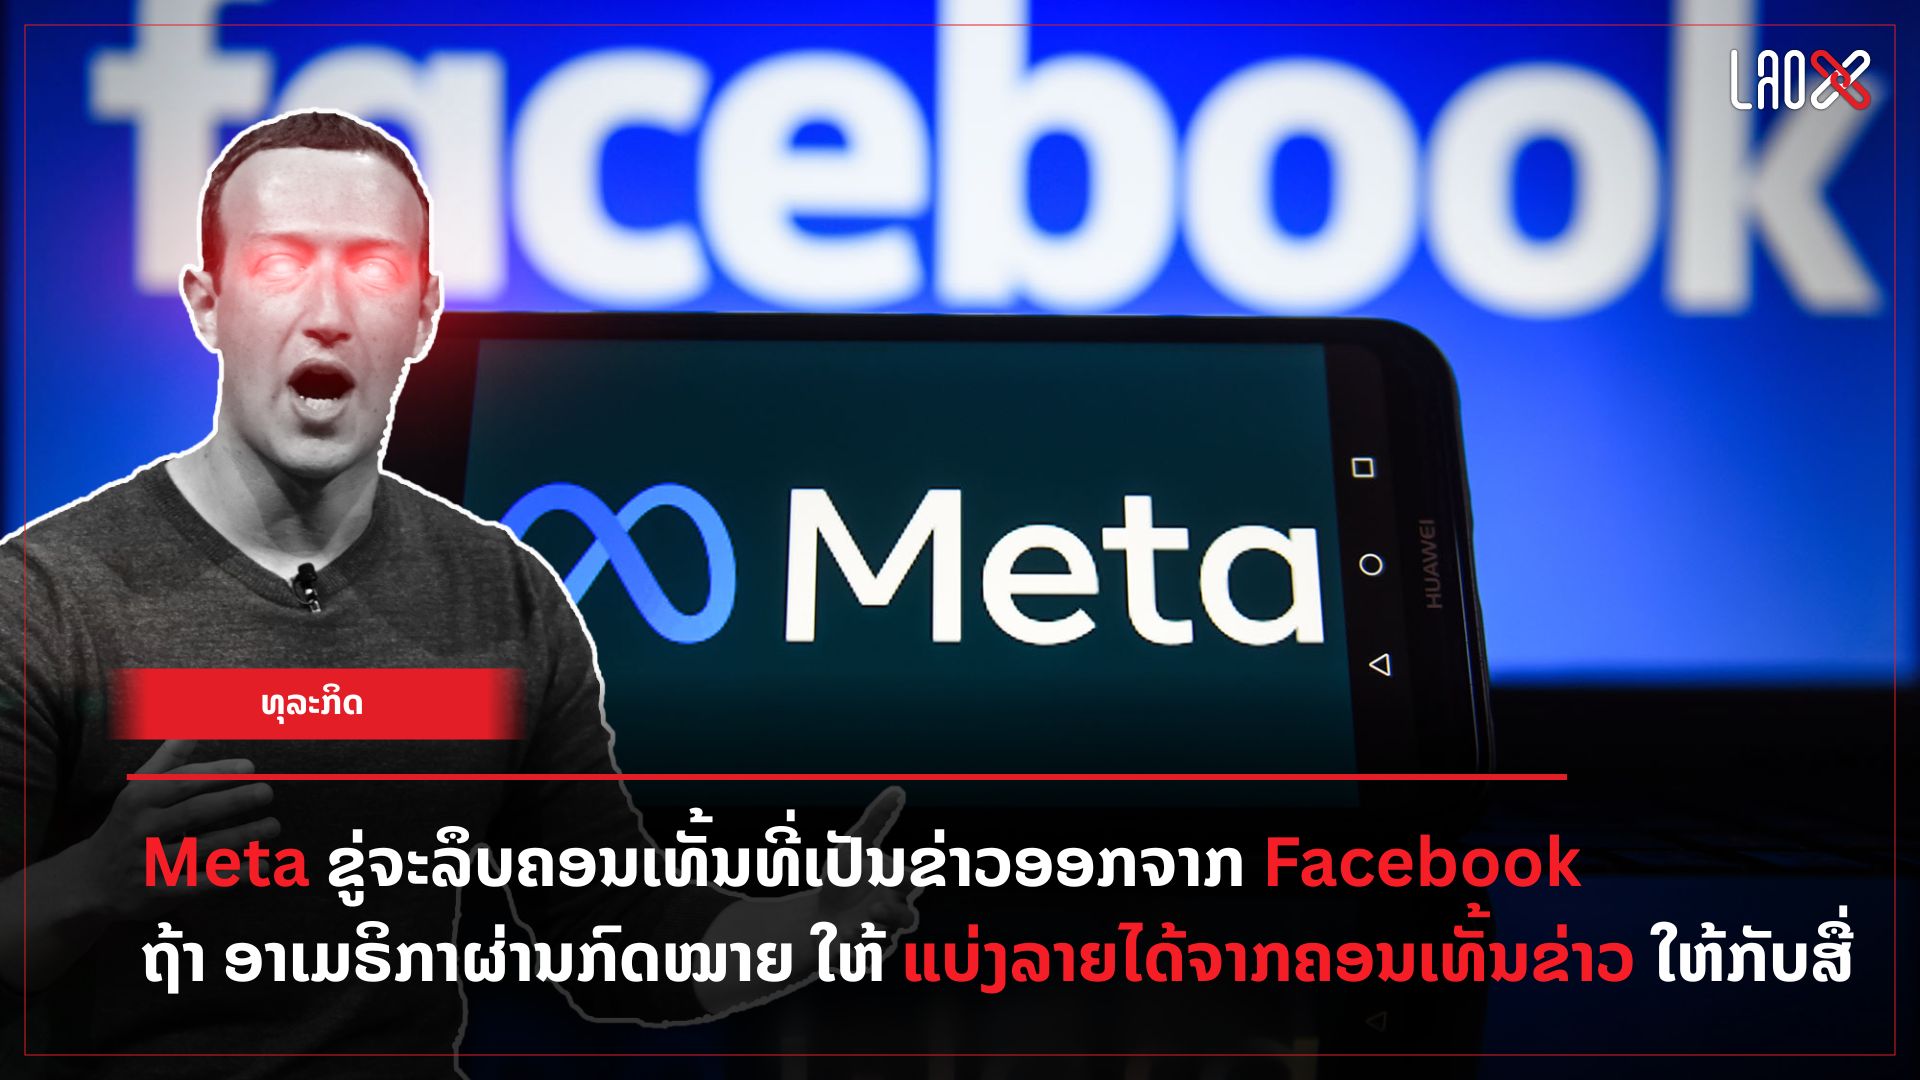 meta-ຂູ່ຈະລຶບຄອນເທັ້ນທີ່ເປັນຂ່າວອອກຈາກ Facebook